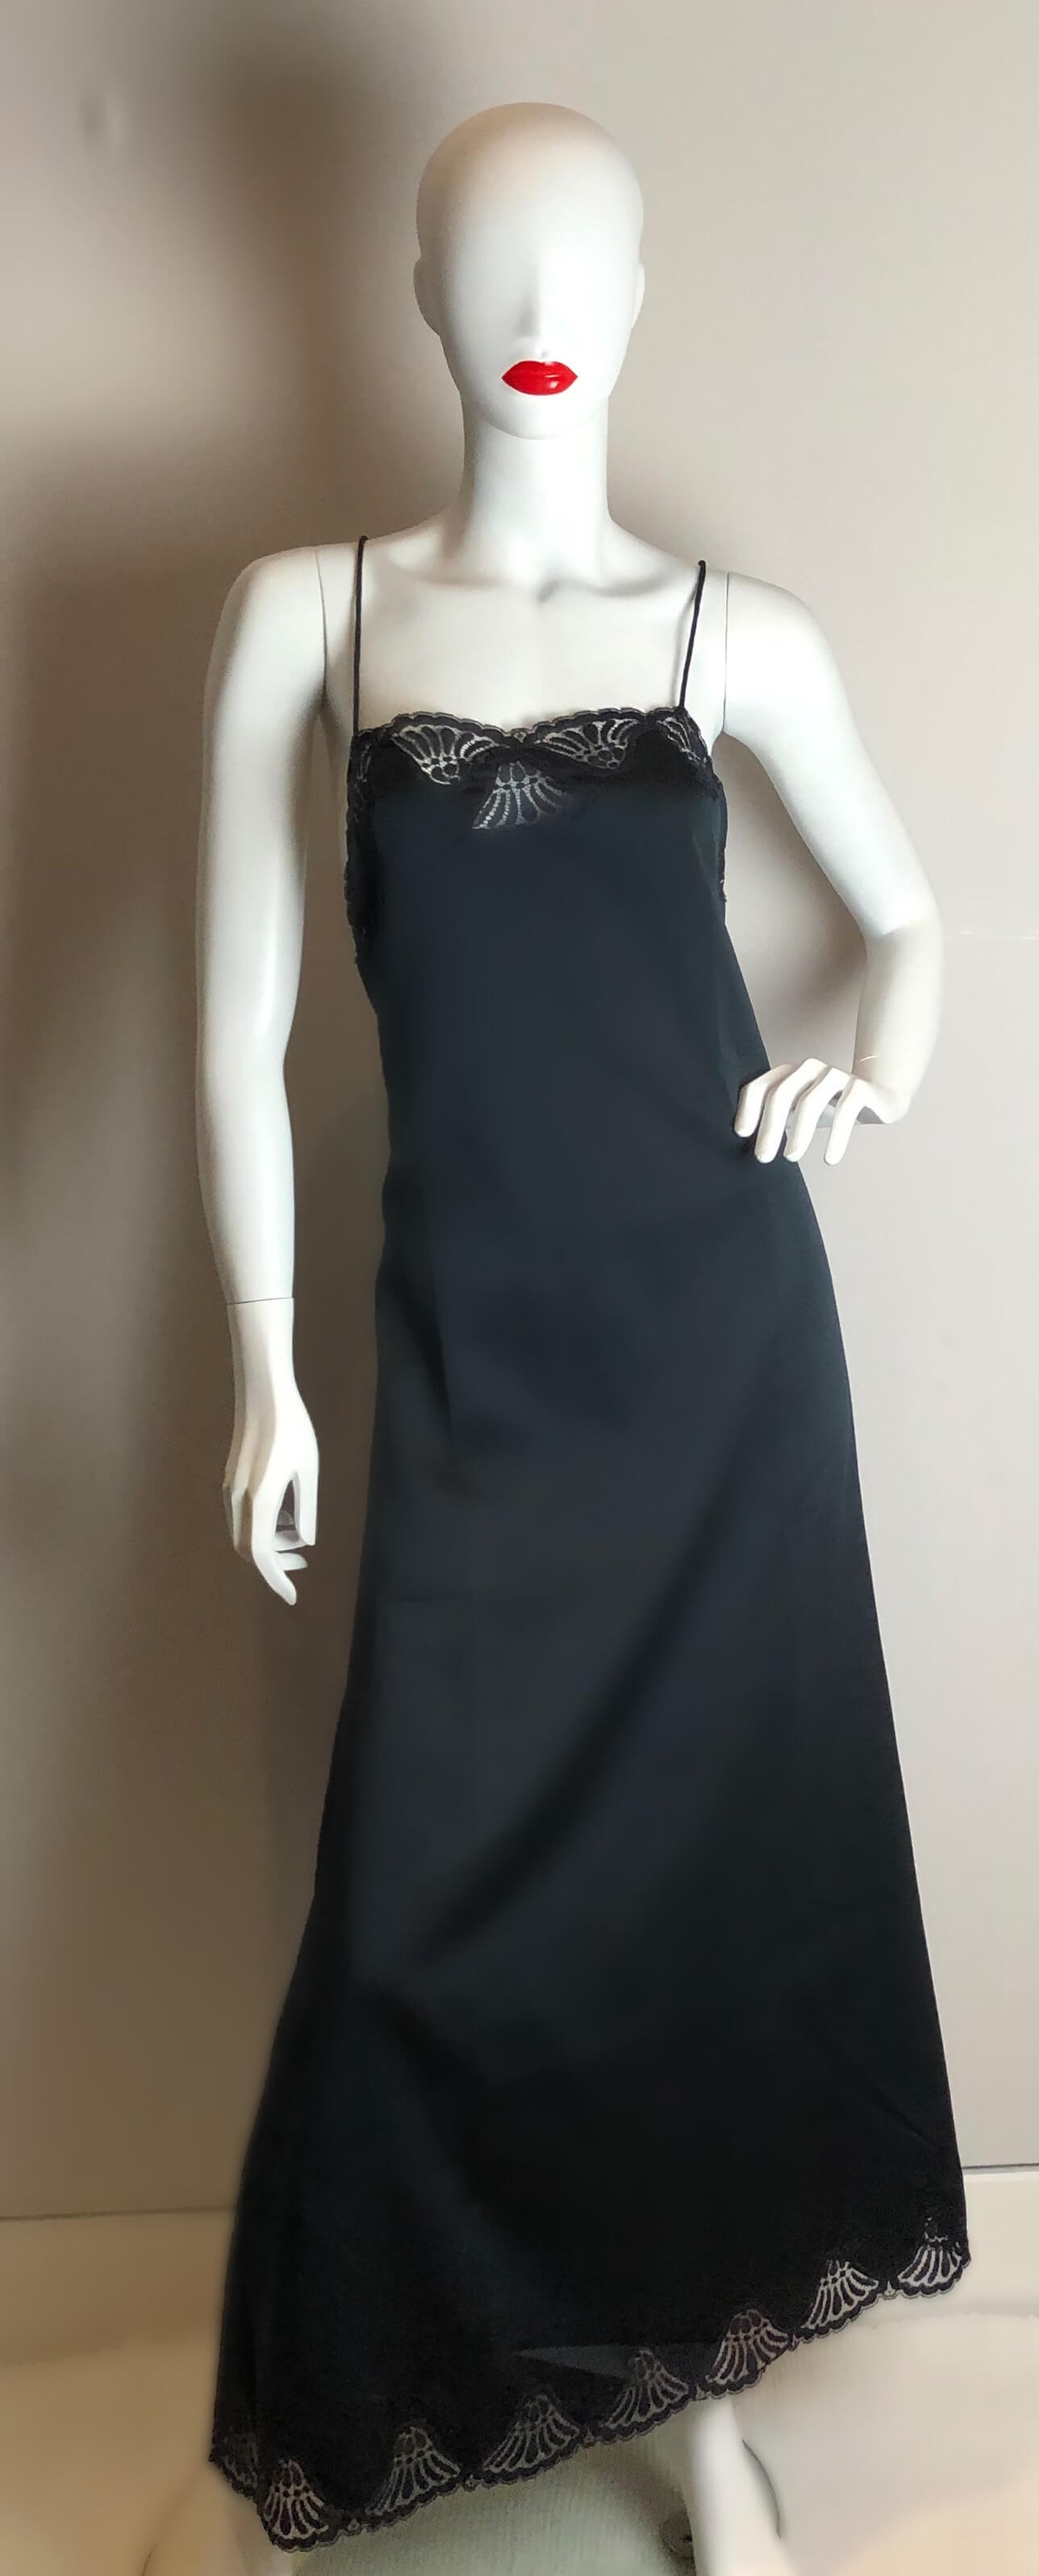 Black Janet Reger backless dress